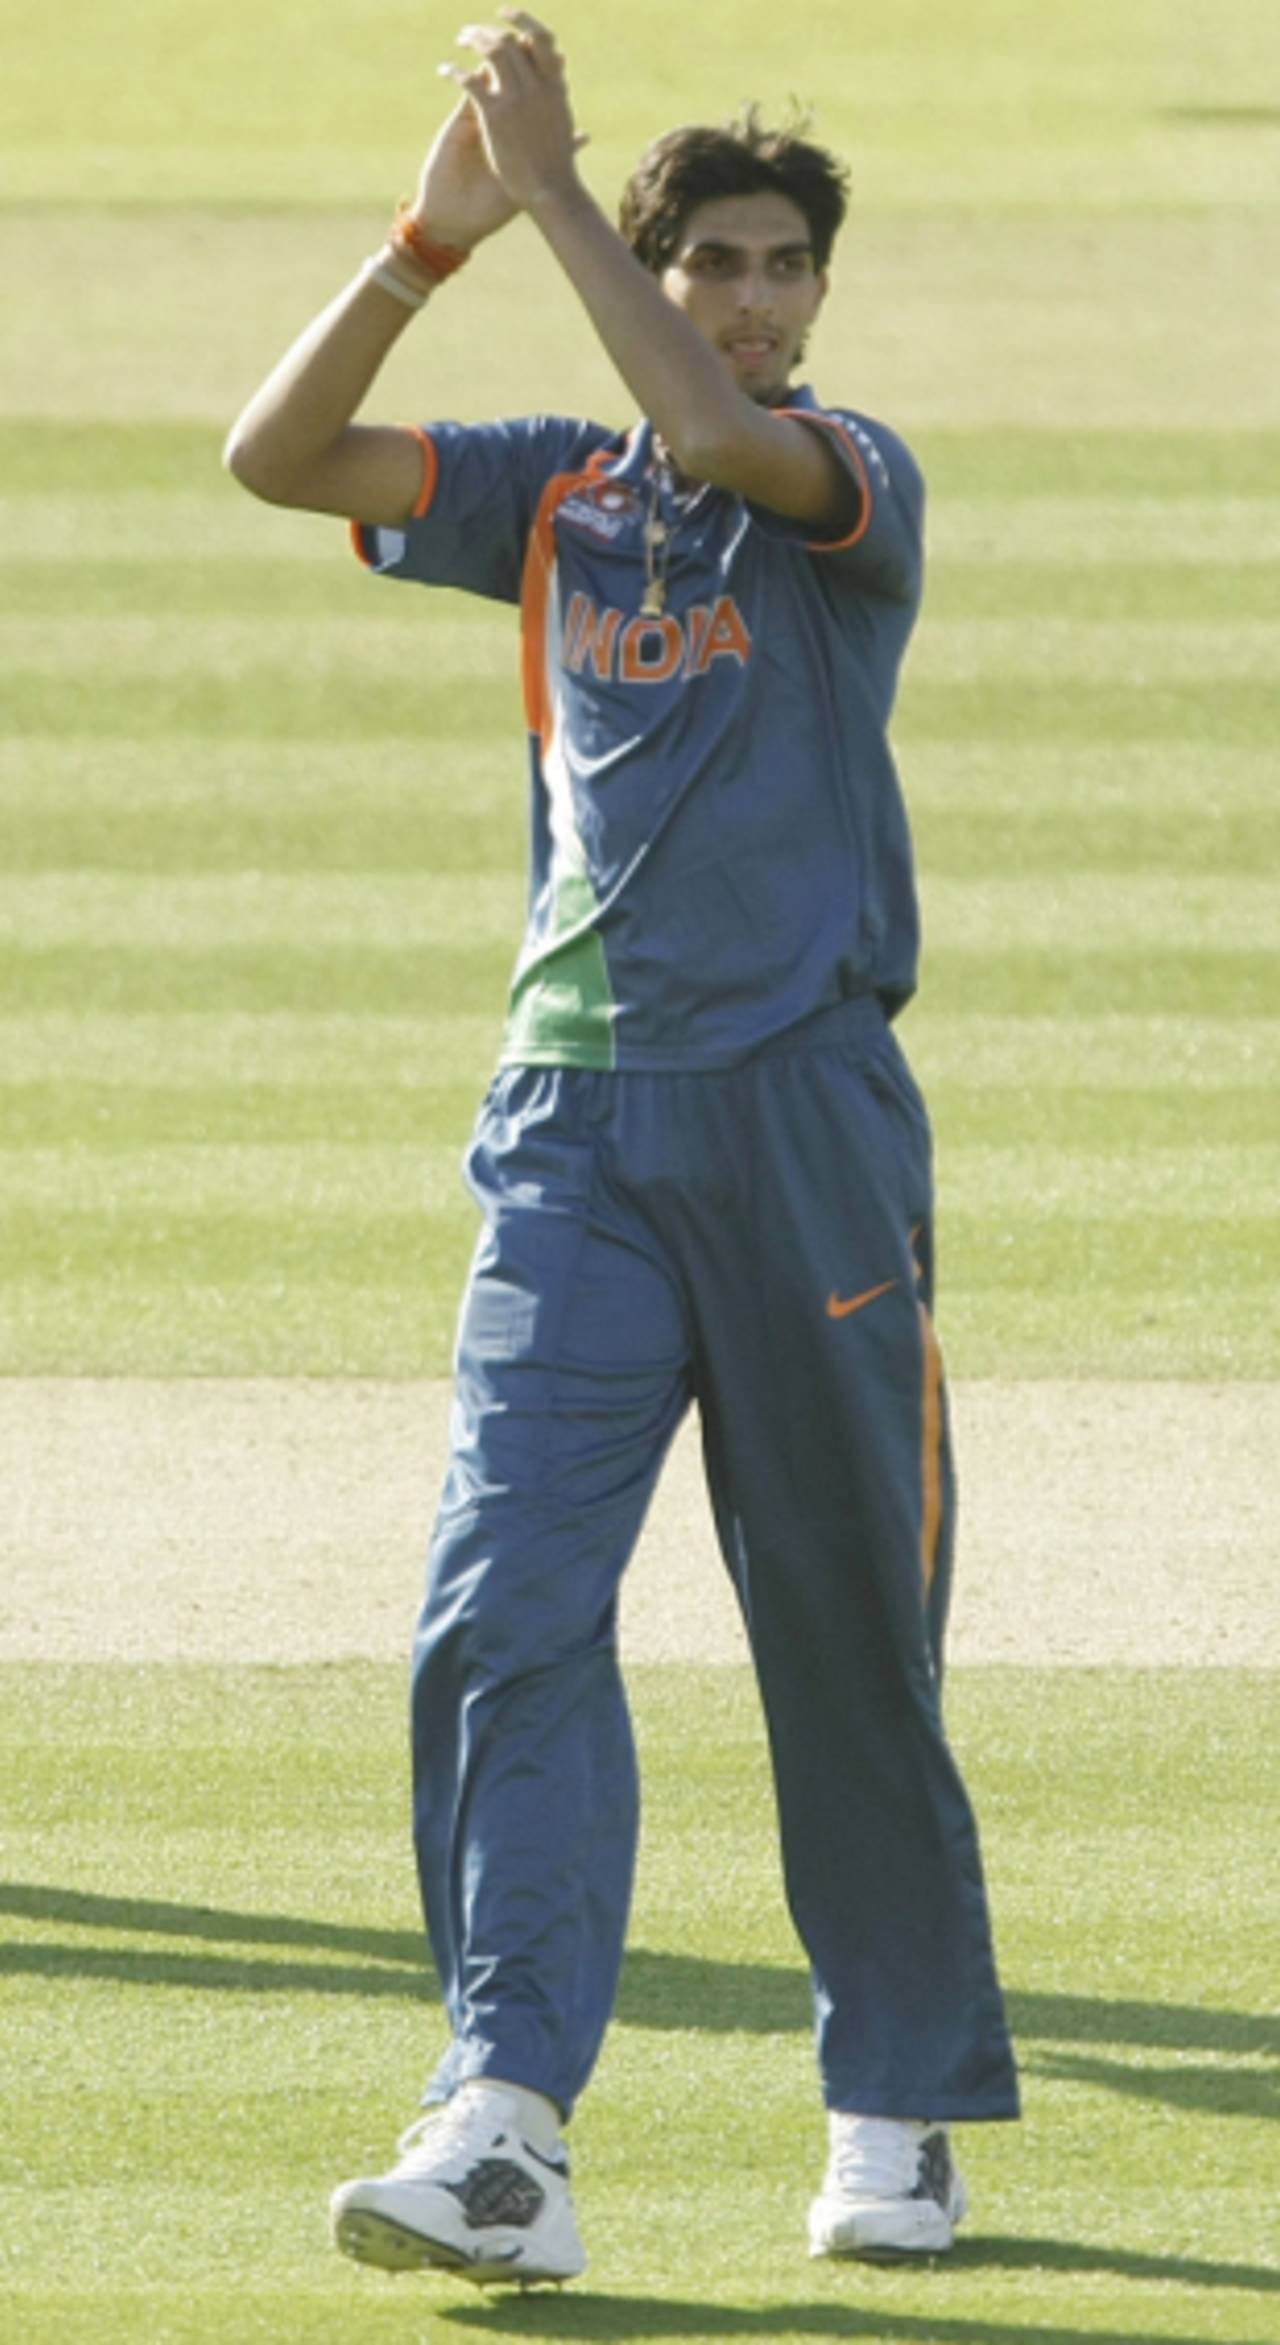 Ishant Sharma celebrates Scott Styris' dismissal, India v New Zealand, ICC World Twenty20 warm-up match, Lord's, June 1, 2009